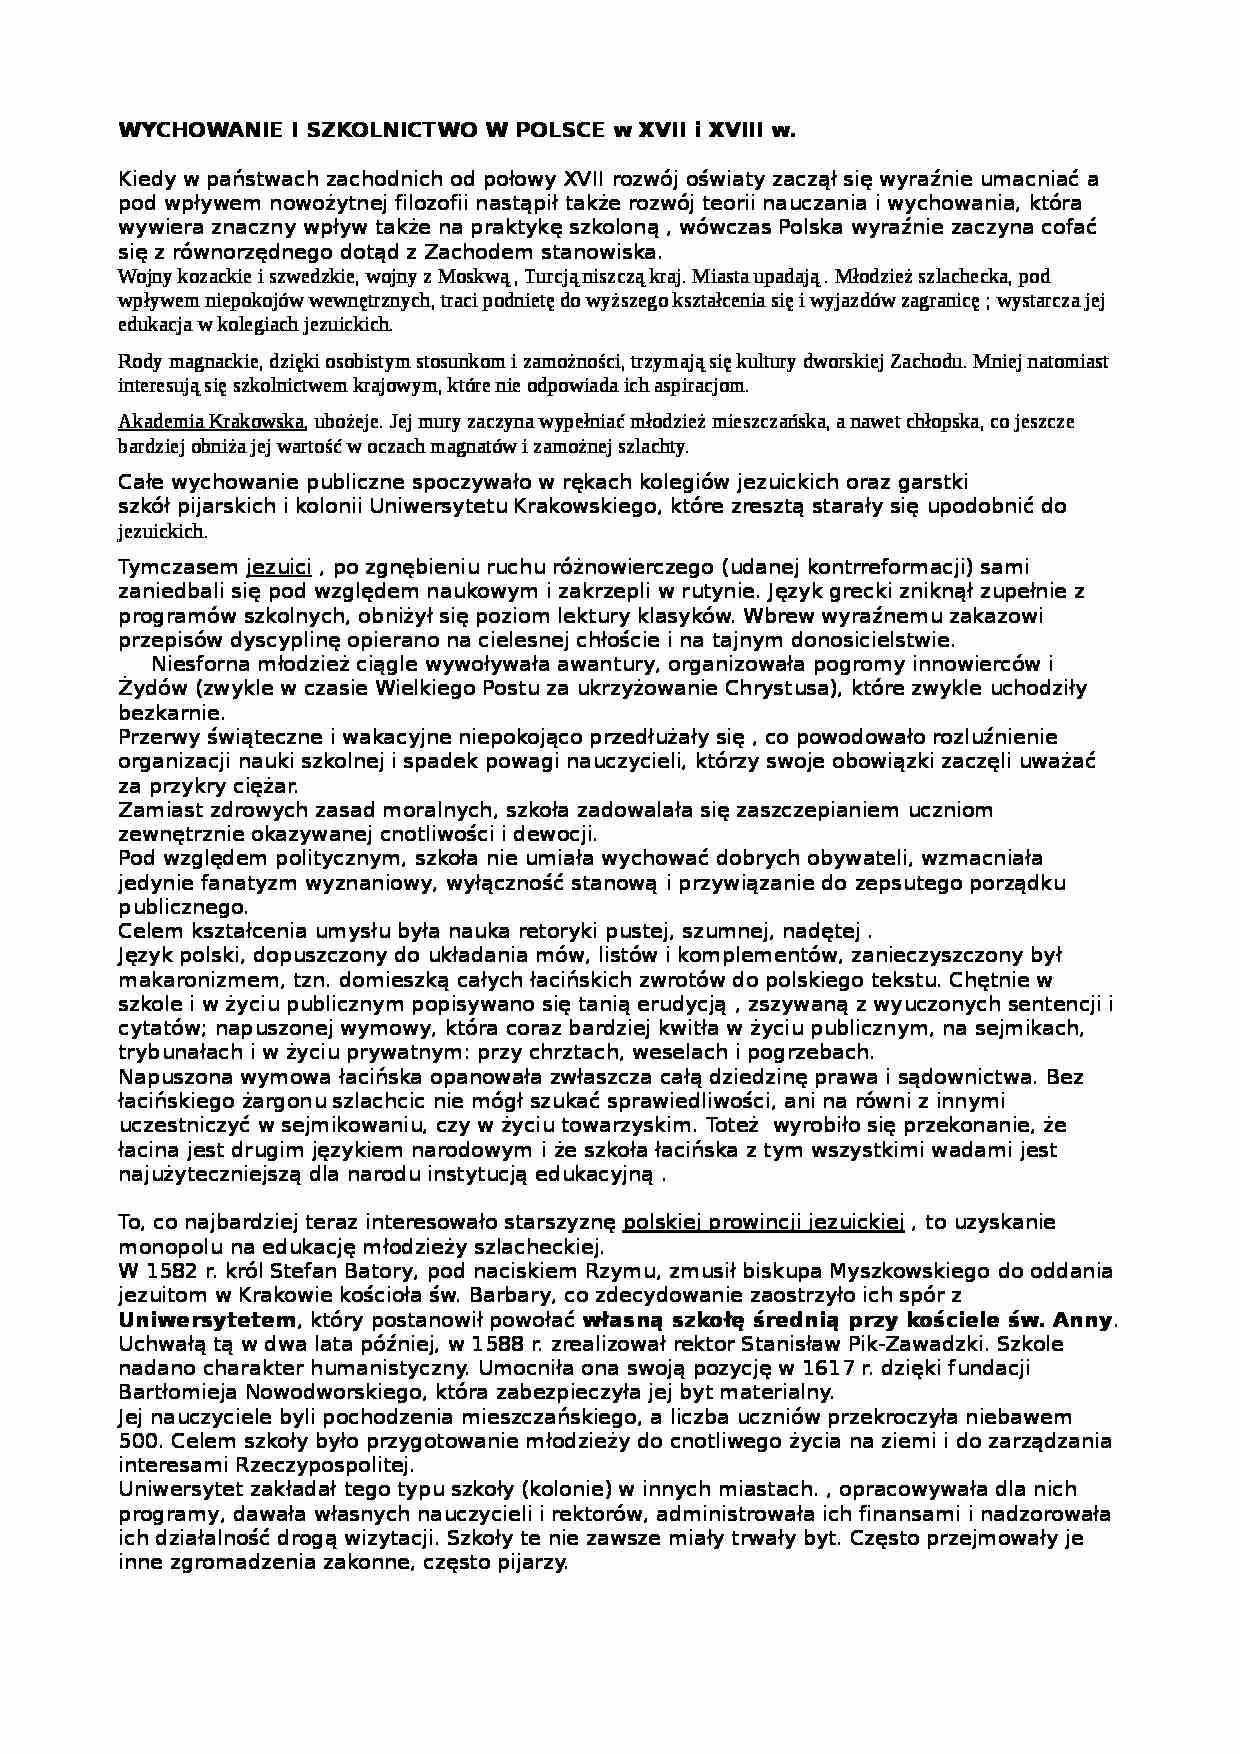 Wychowanie i szkolnictwo w Polsce w XVIII i XIX  - strona 1